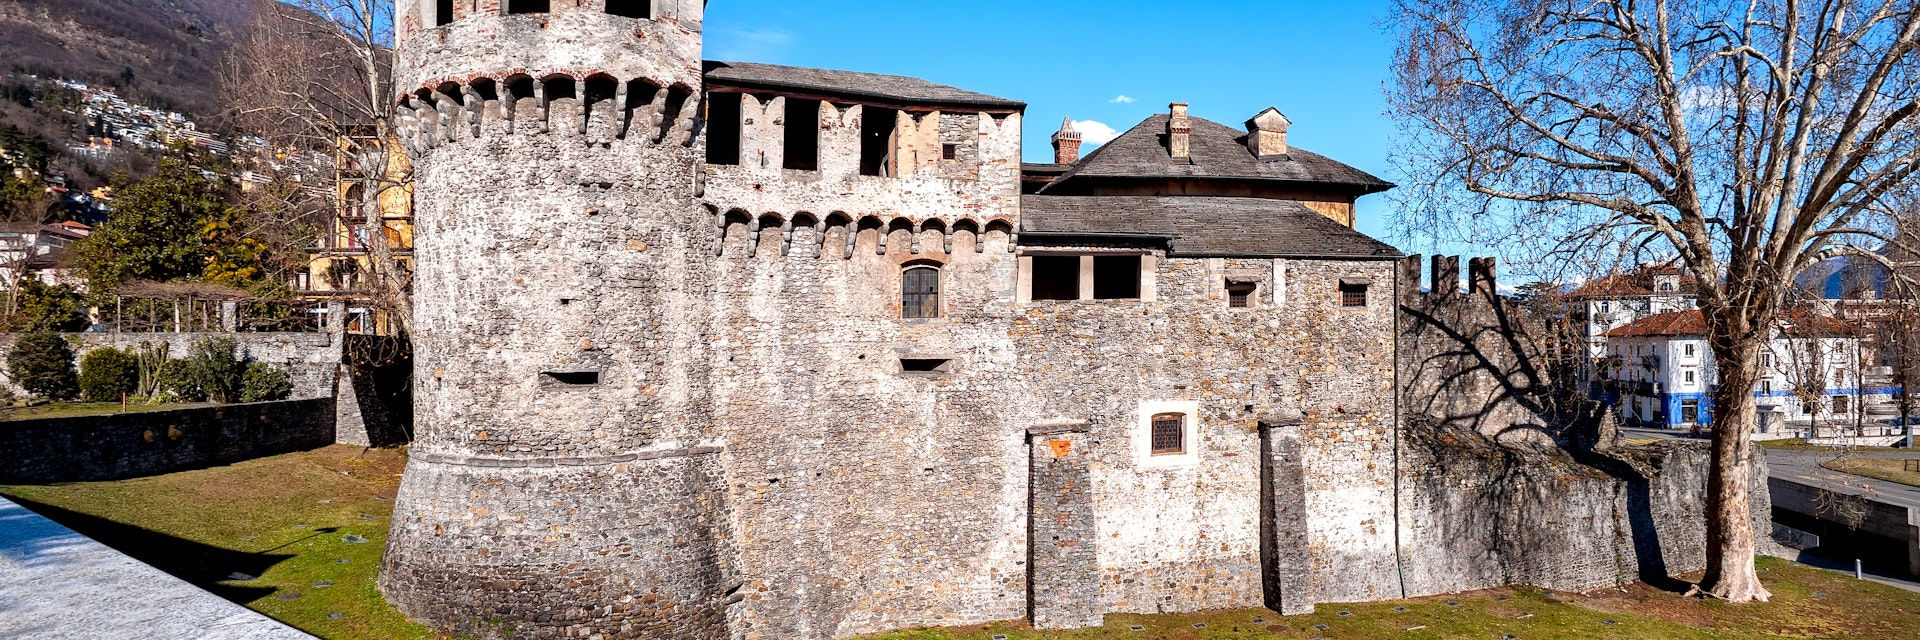 Castello Visconteo in Locarno, Switzerland.